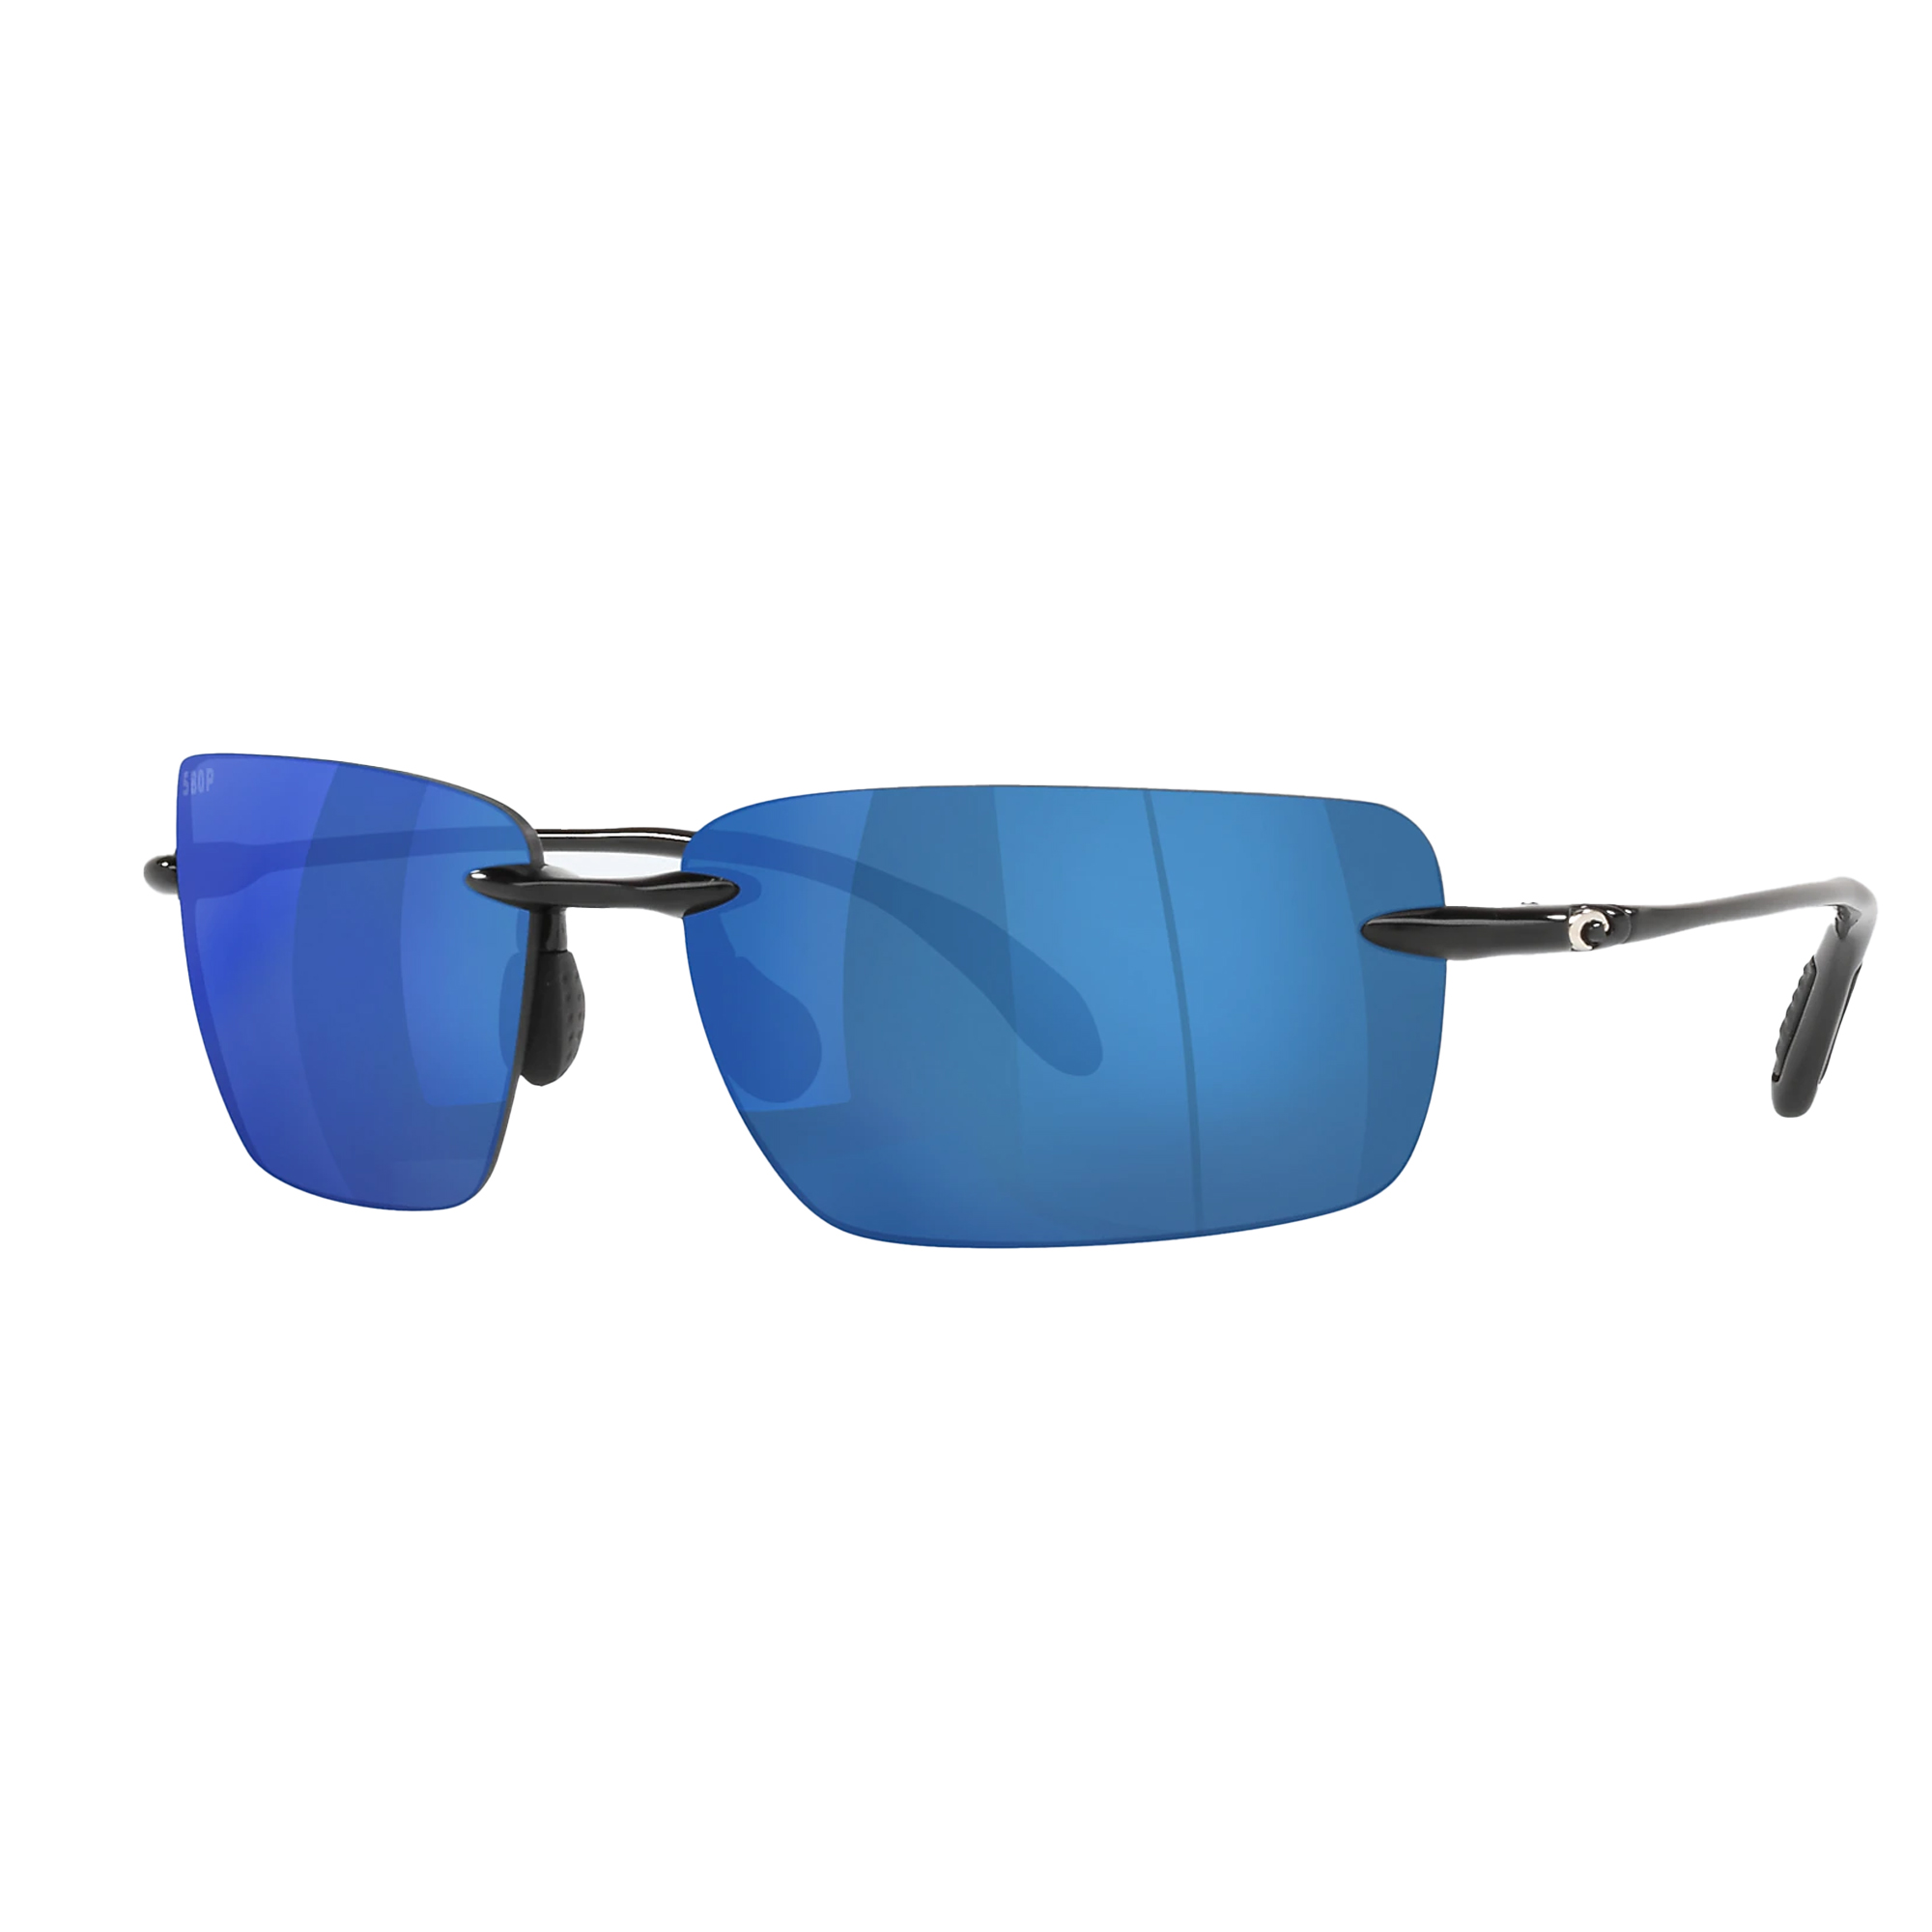 Costa Gulf Shore Polarized Sunglasses